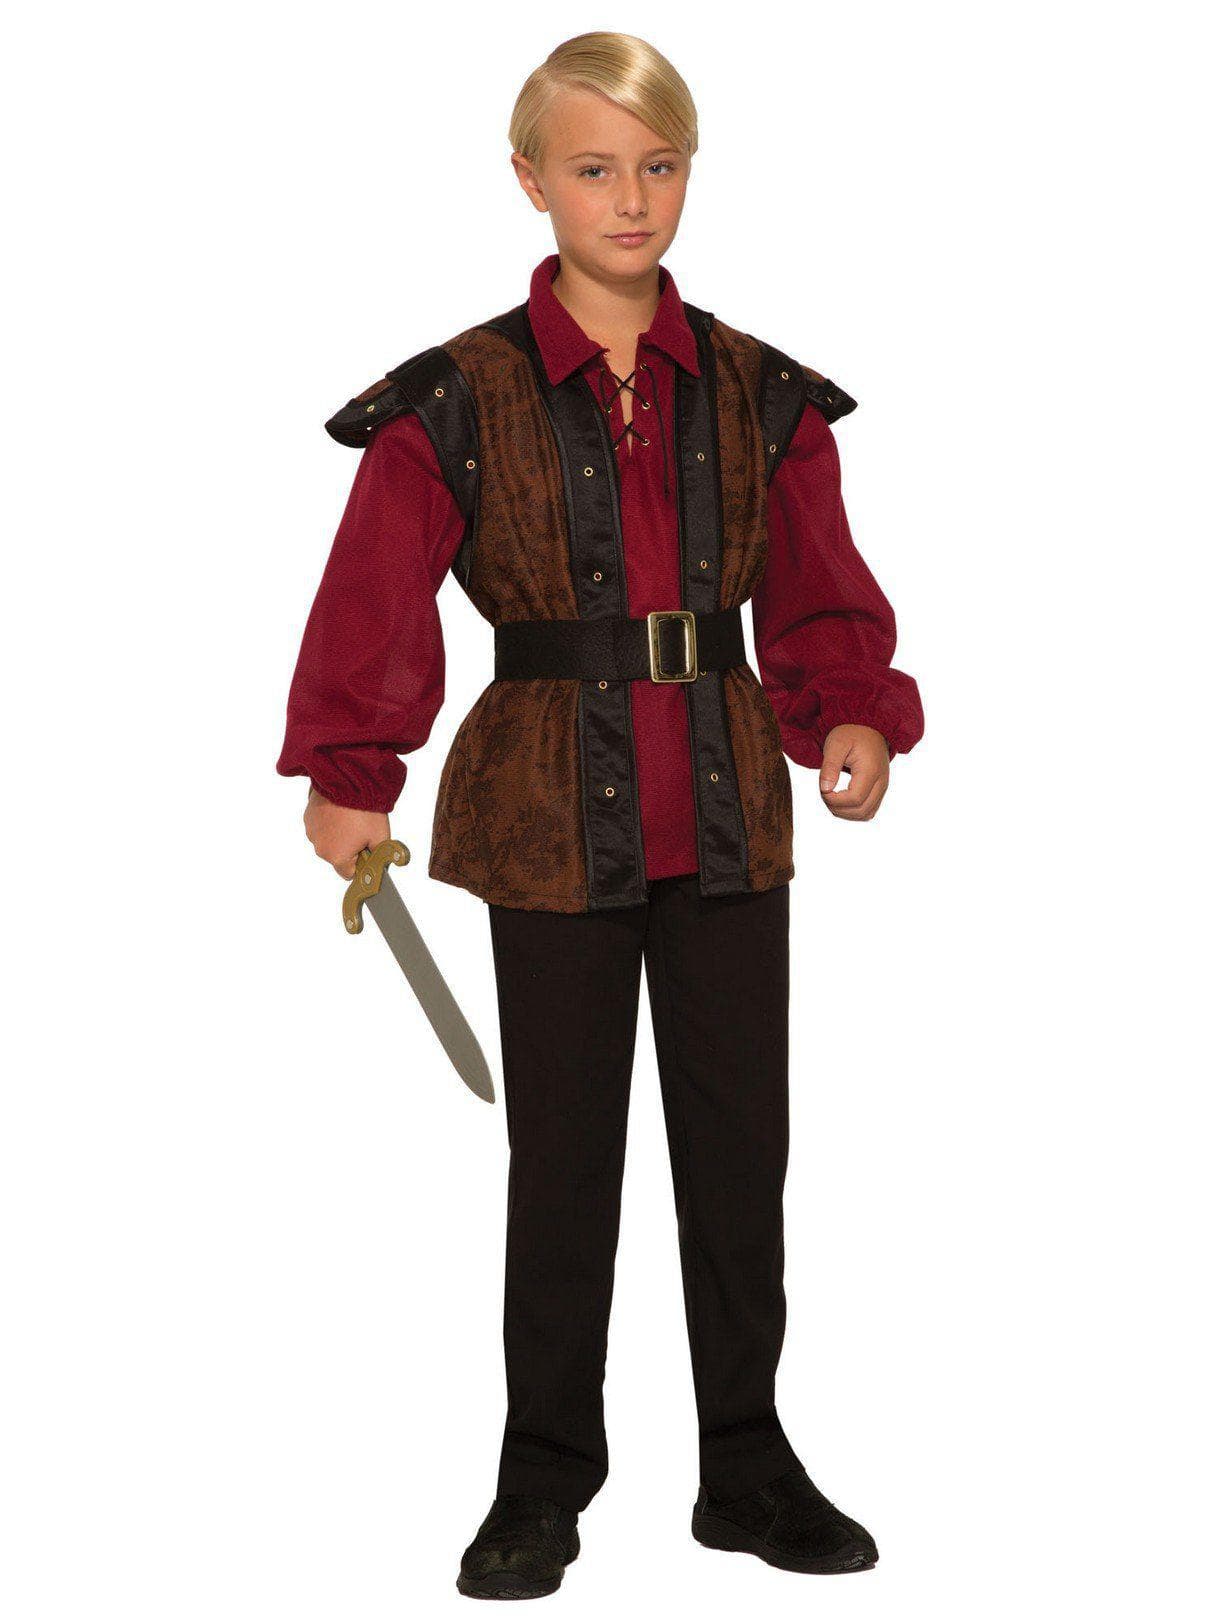 Kid's Renaissance Faire Boy Costume - costumes.com